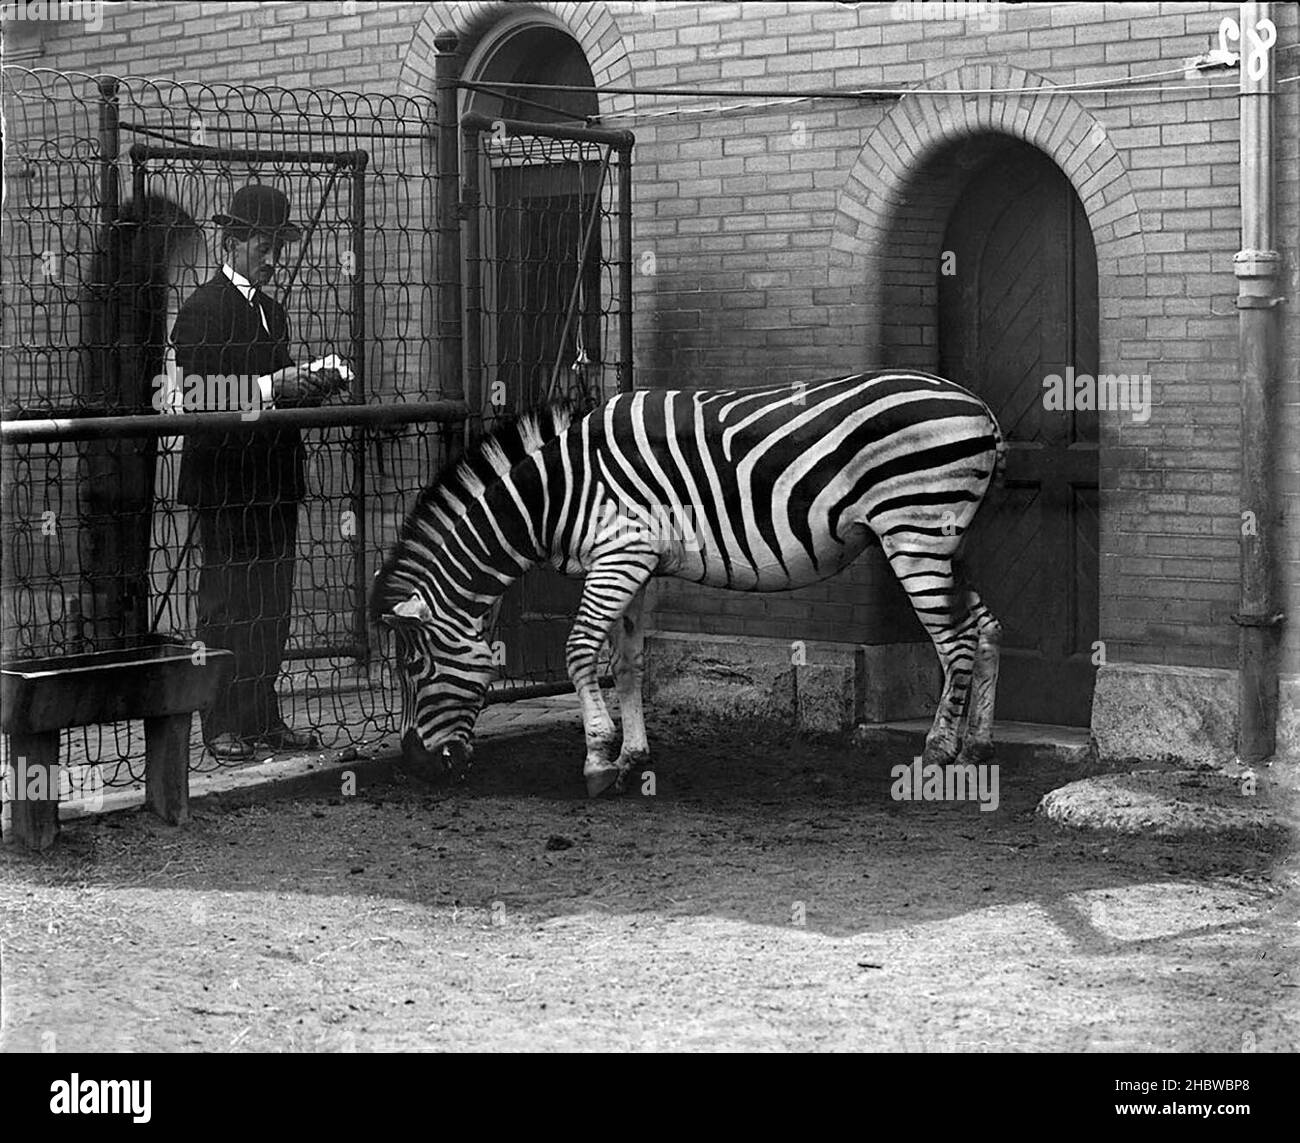 Zebra (probablement Grant's) au zoo de Lincoln Park avec un homme dans un chapeau et un costume de Bowler nourrissant le zèbre ou regardant à travers la cage.Bâtiment en brique derrière avec portes voûtées.1900. Banque D'Images